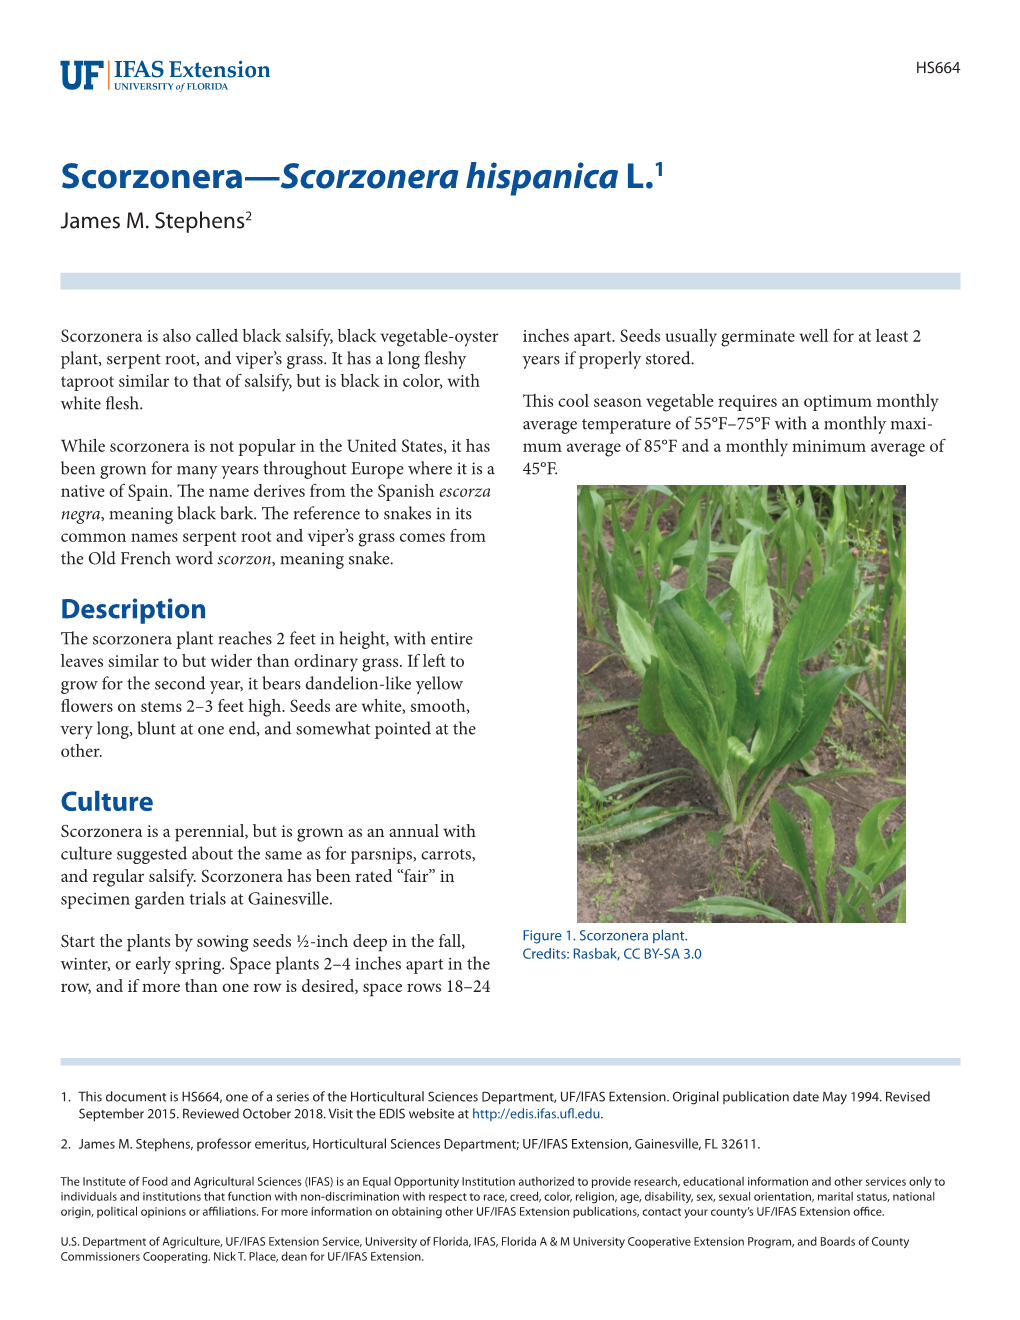 Scorzonera—Scorzonera Hispanica L.1 James M